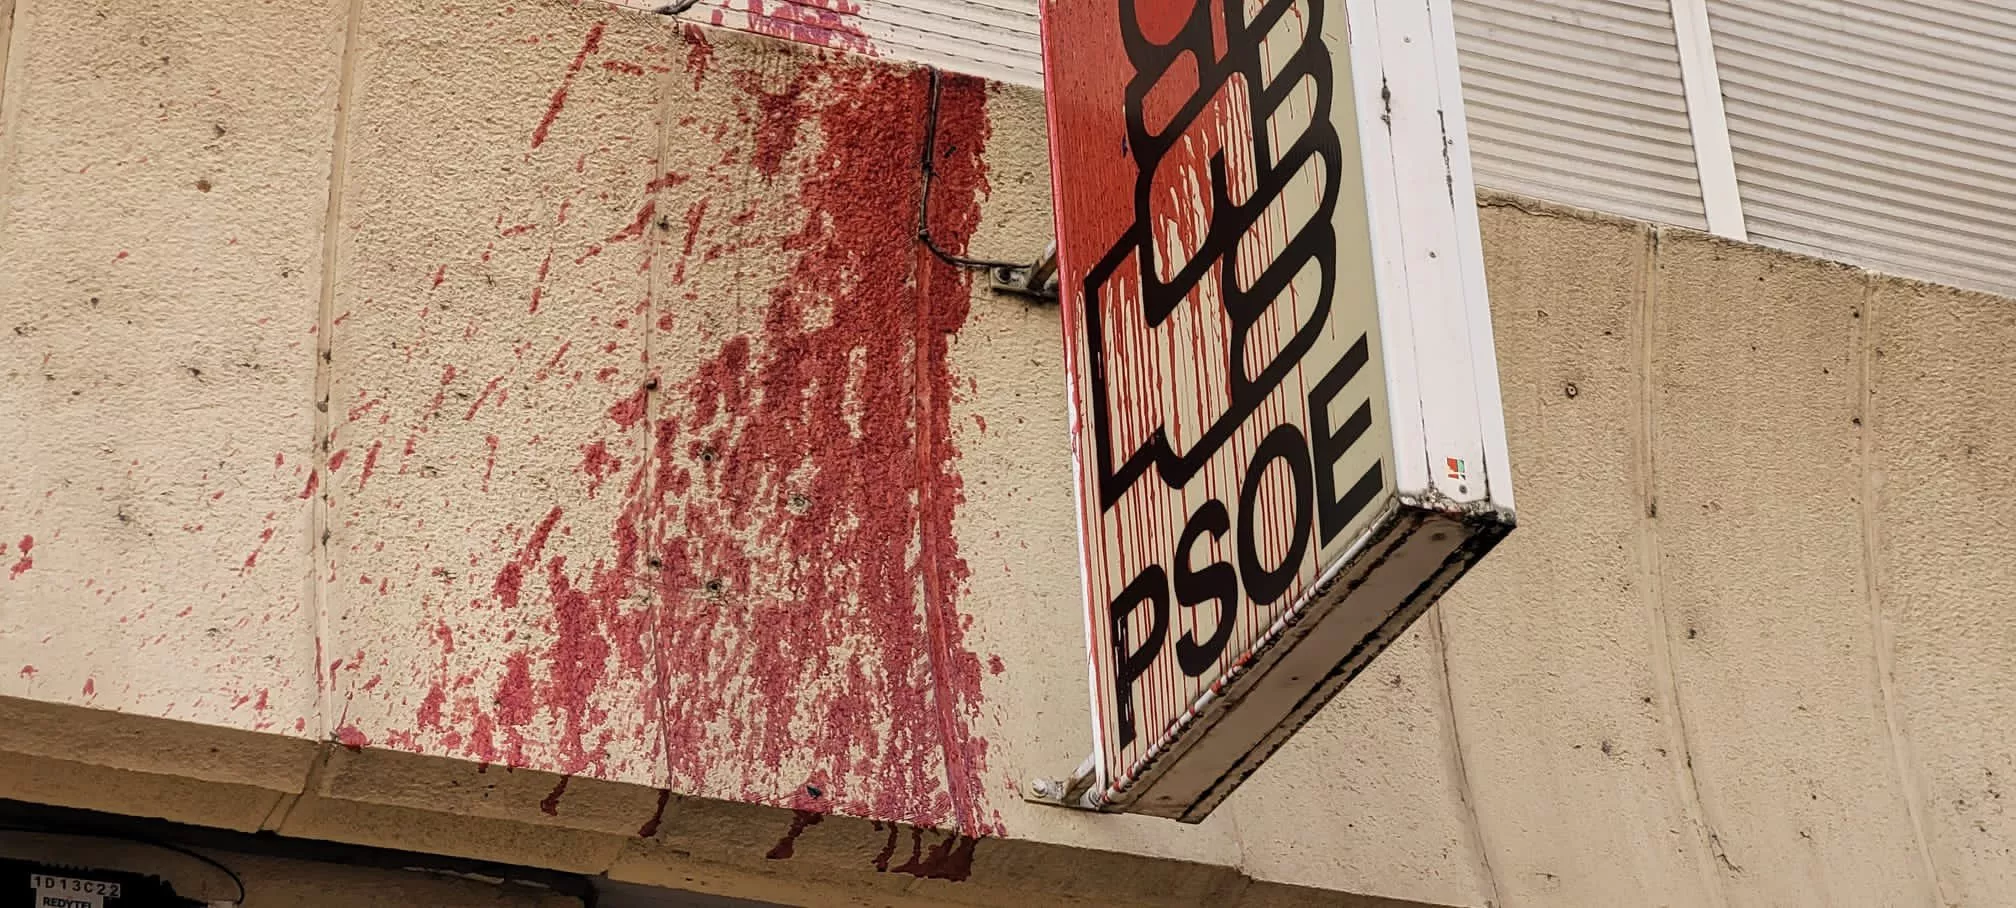 Sede del PSOE de Ponferrada vandalizada con pintura roja